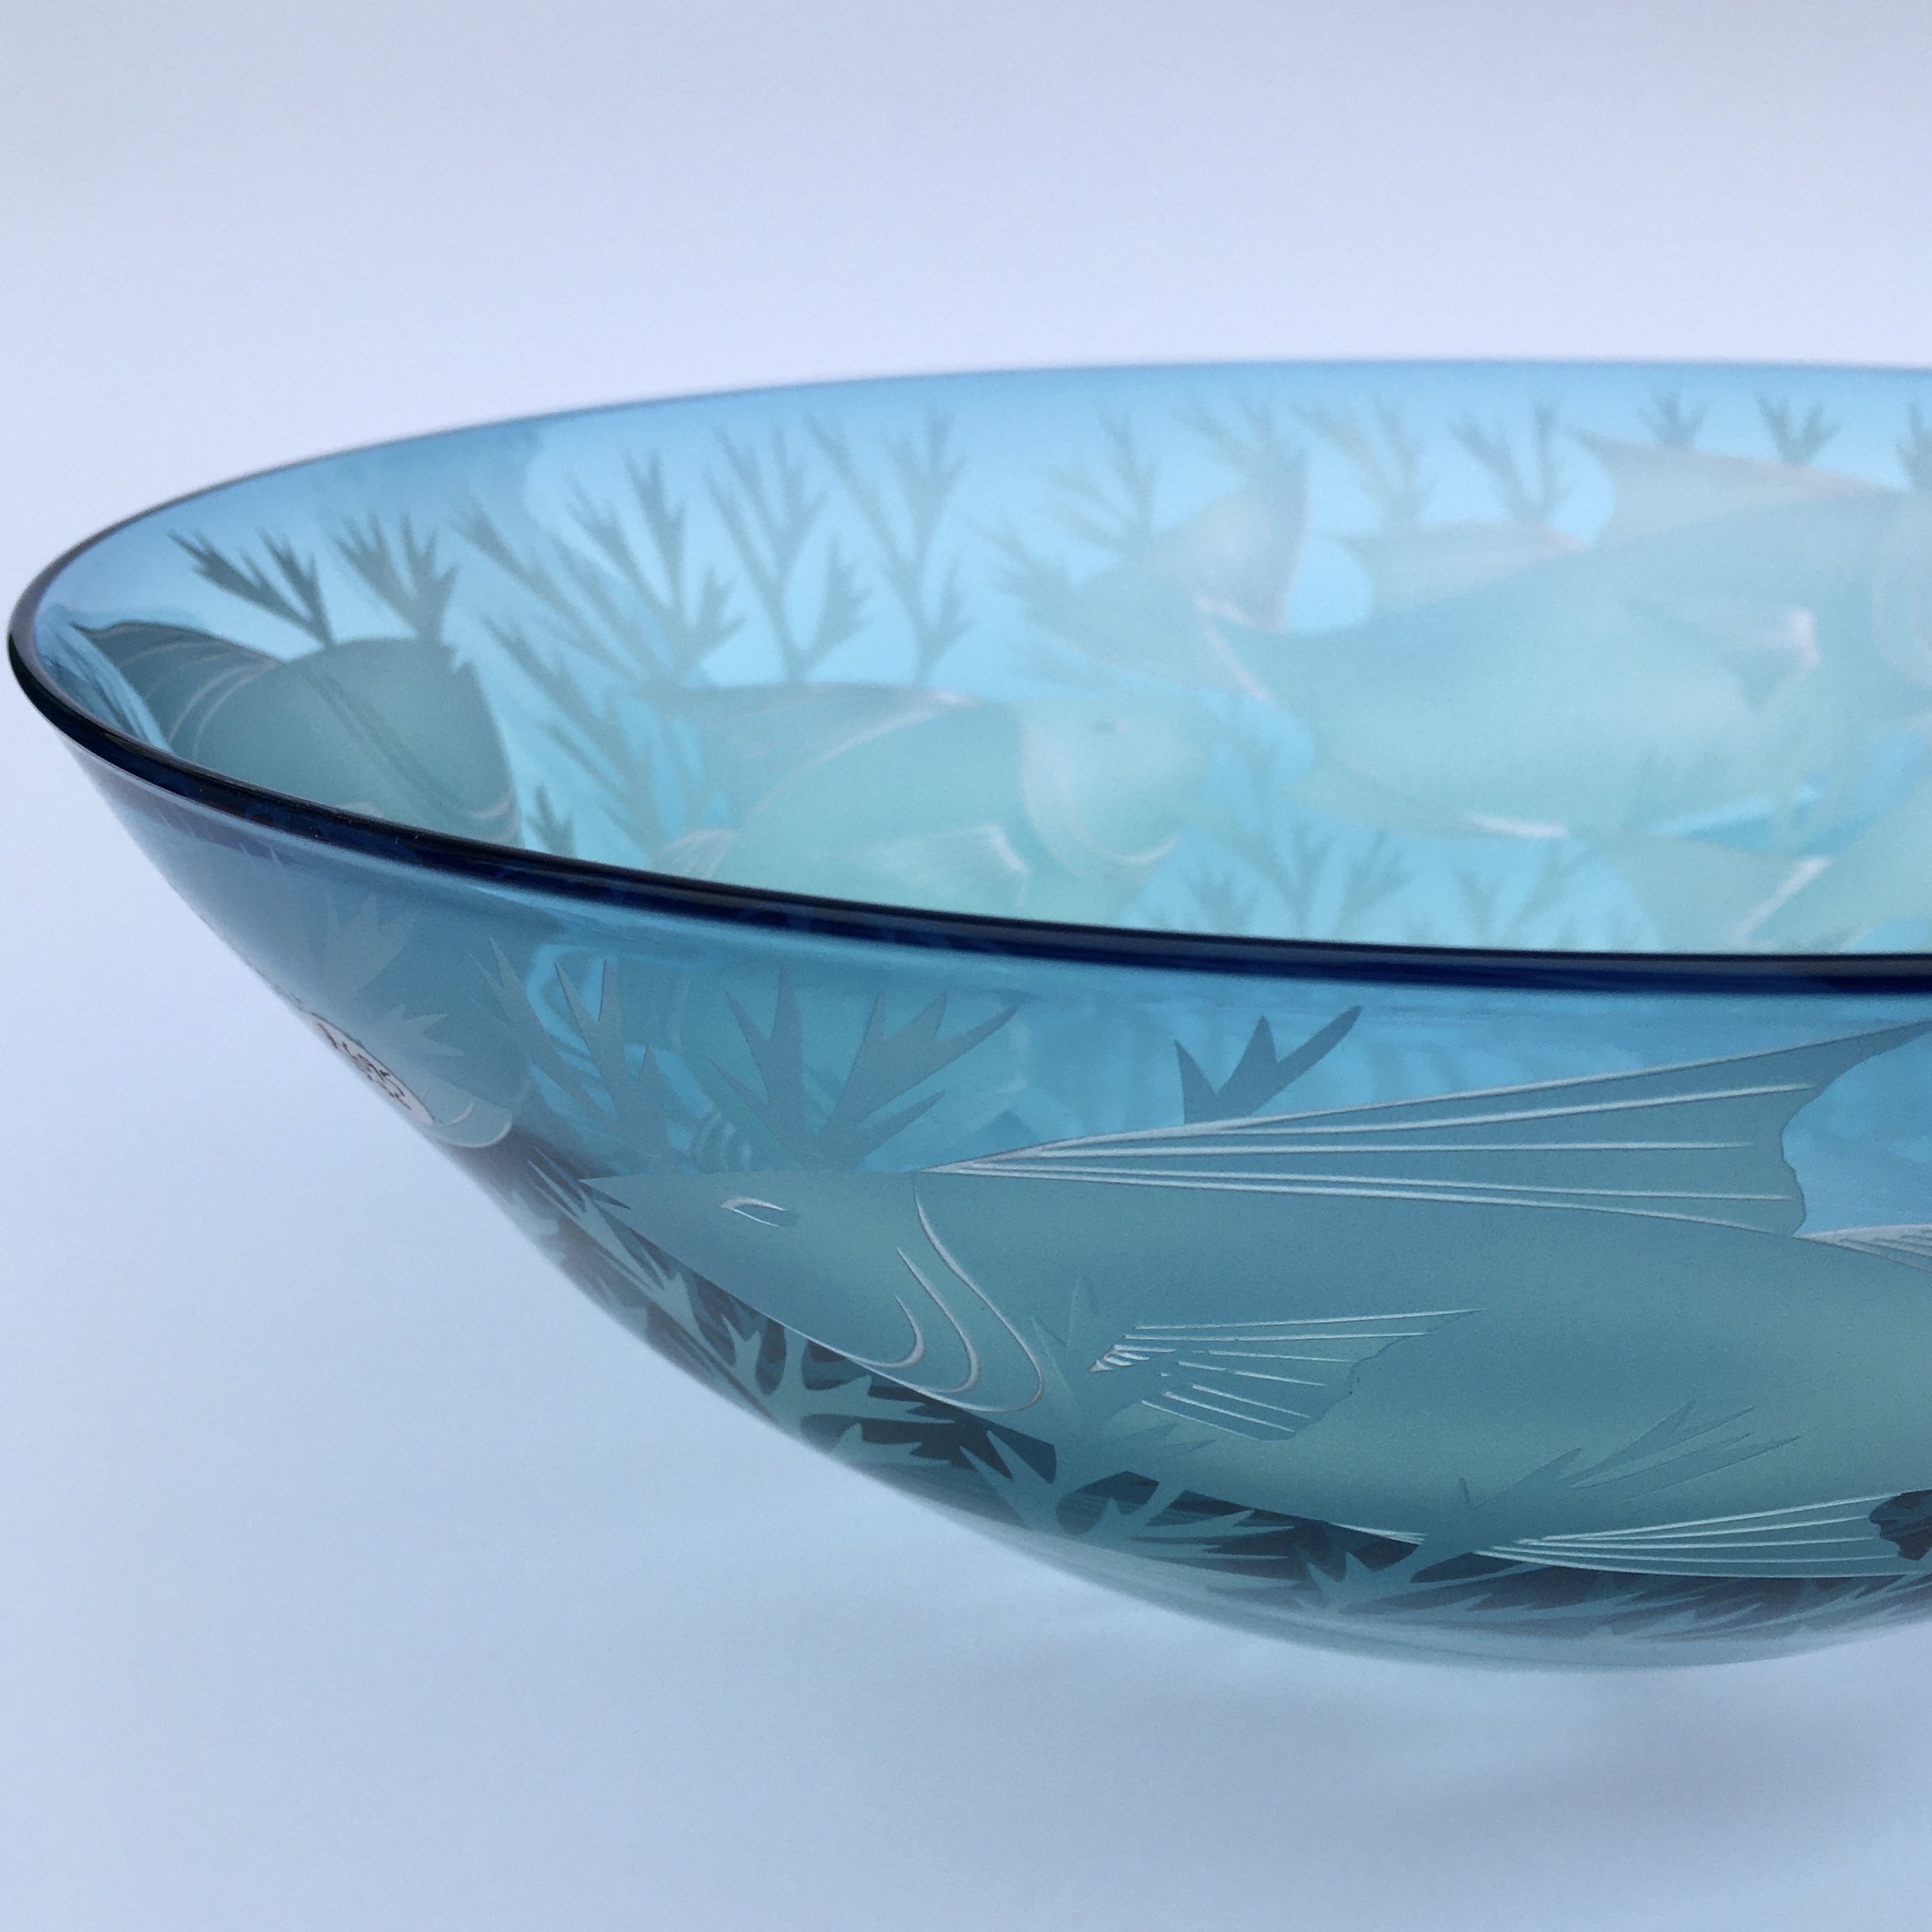 Finned_Fish_glass_bowl_cu_Julia_Linstead_Glass.jpg